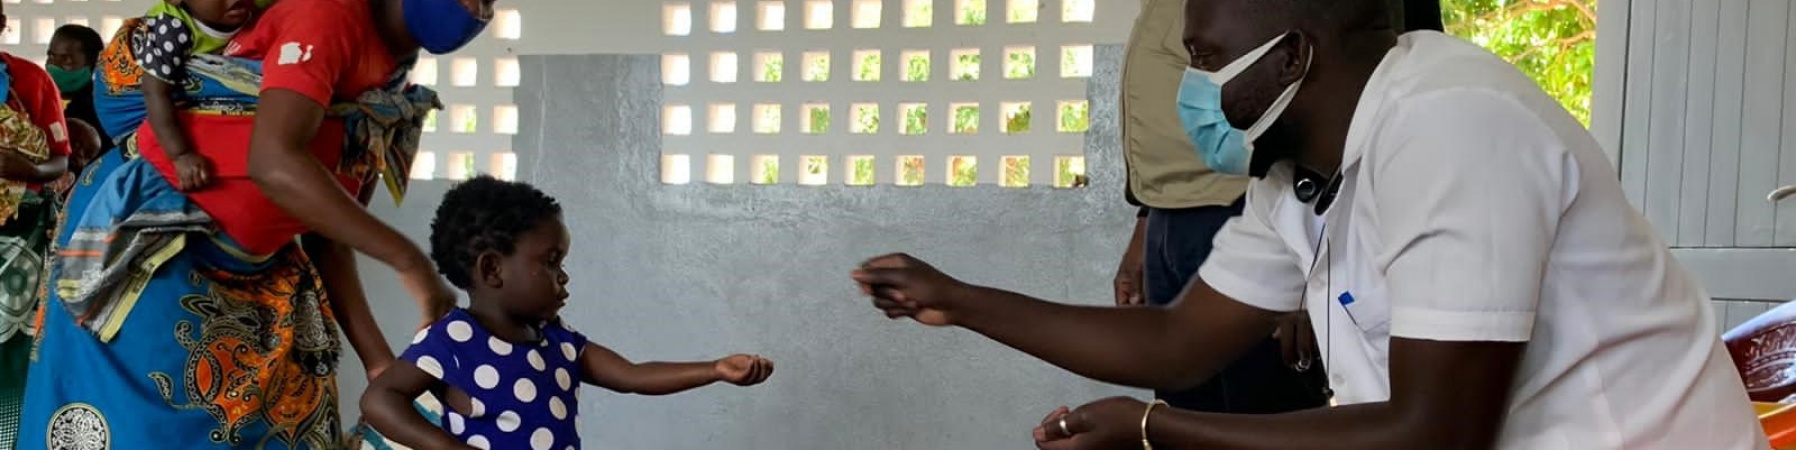 distribuzione di farmaci e vitamine in una scuola in Mozambico